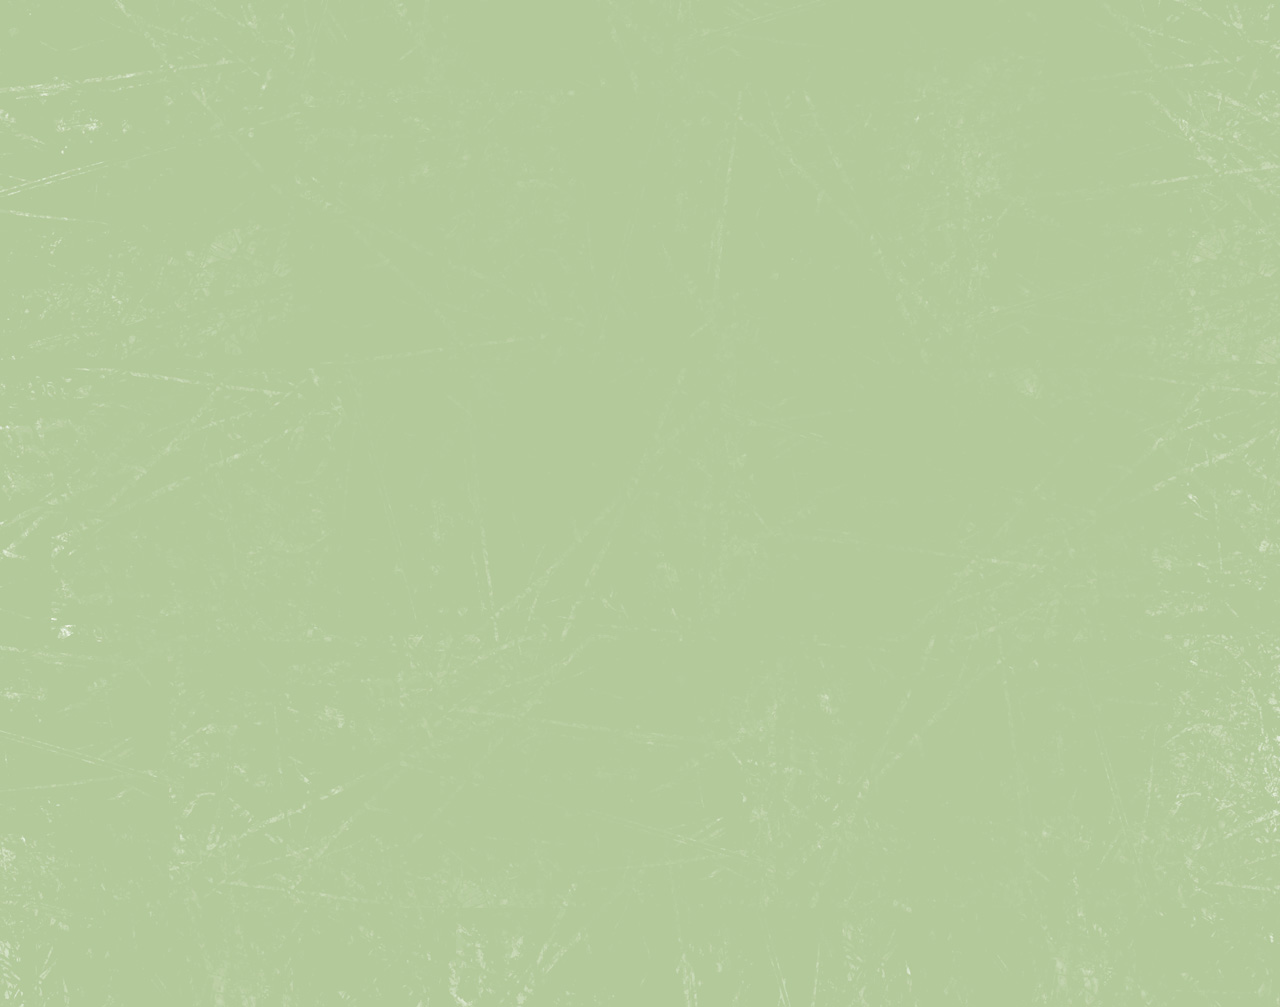 46+] Solid Green Wallpaper - WallpaperSafari